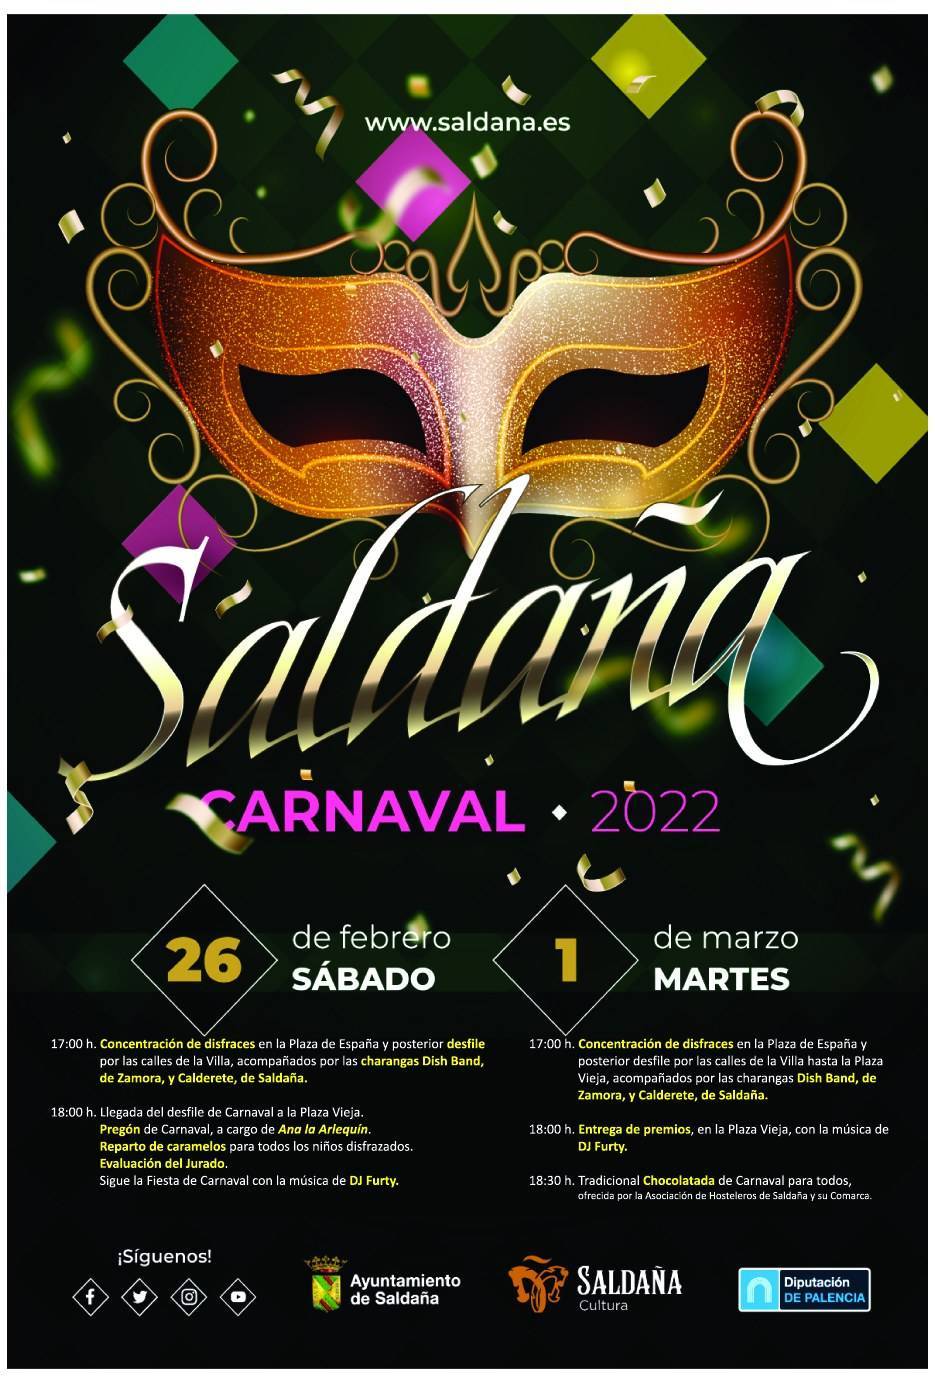 Carnaval (2022) - Saldaña (Palencia)